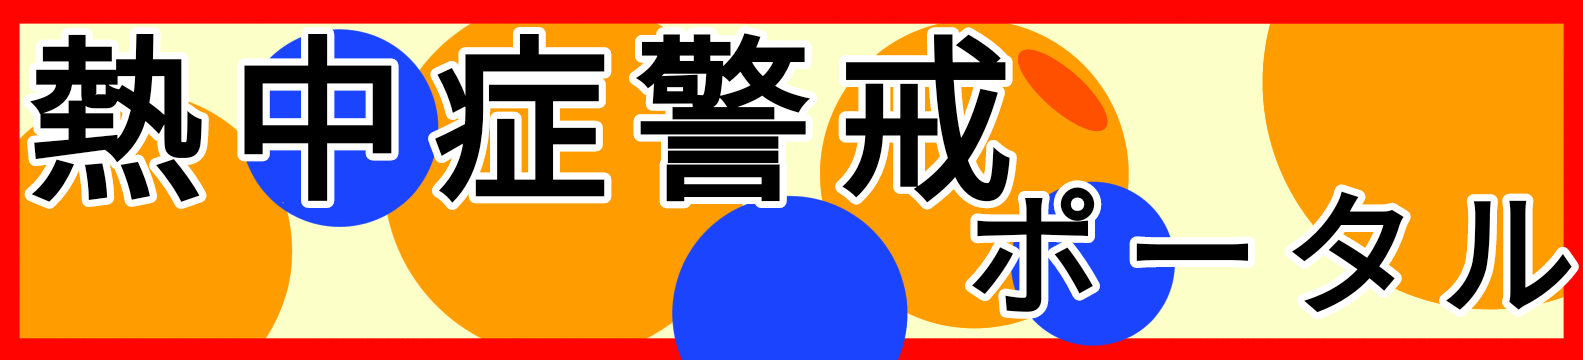 熊谷地方気象台熱中症警戒アラートポータル